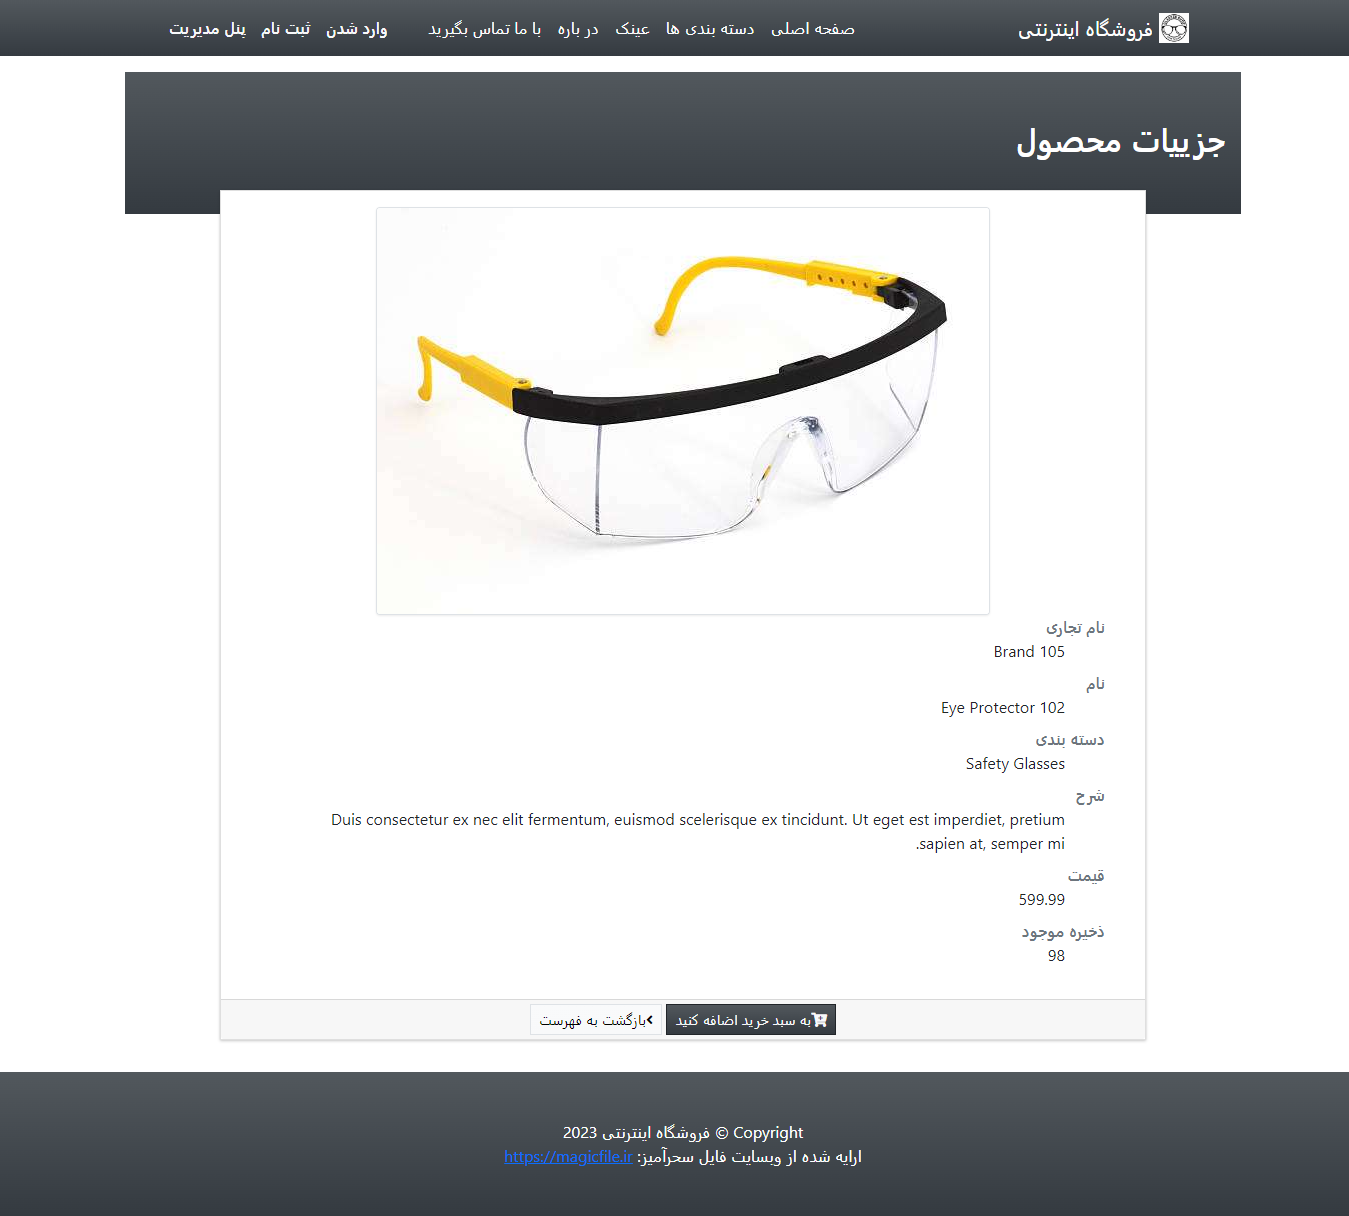 دانلود اسکریپت وب سایت فروشگاه آنلاین عینک با استفاده از PHP و MySQL  33